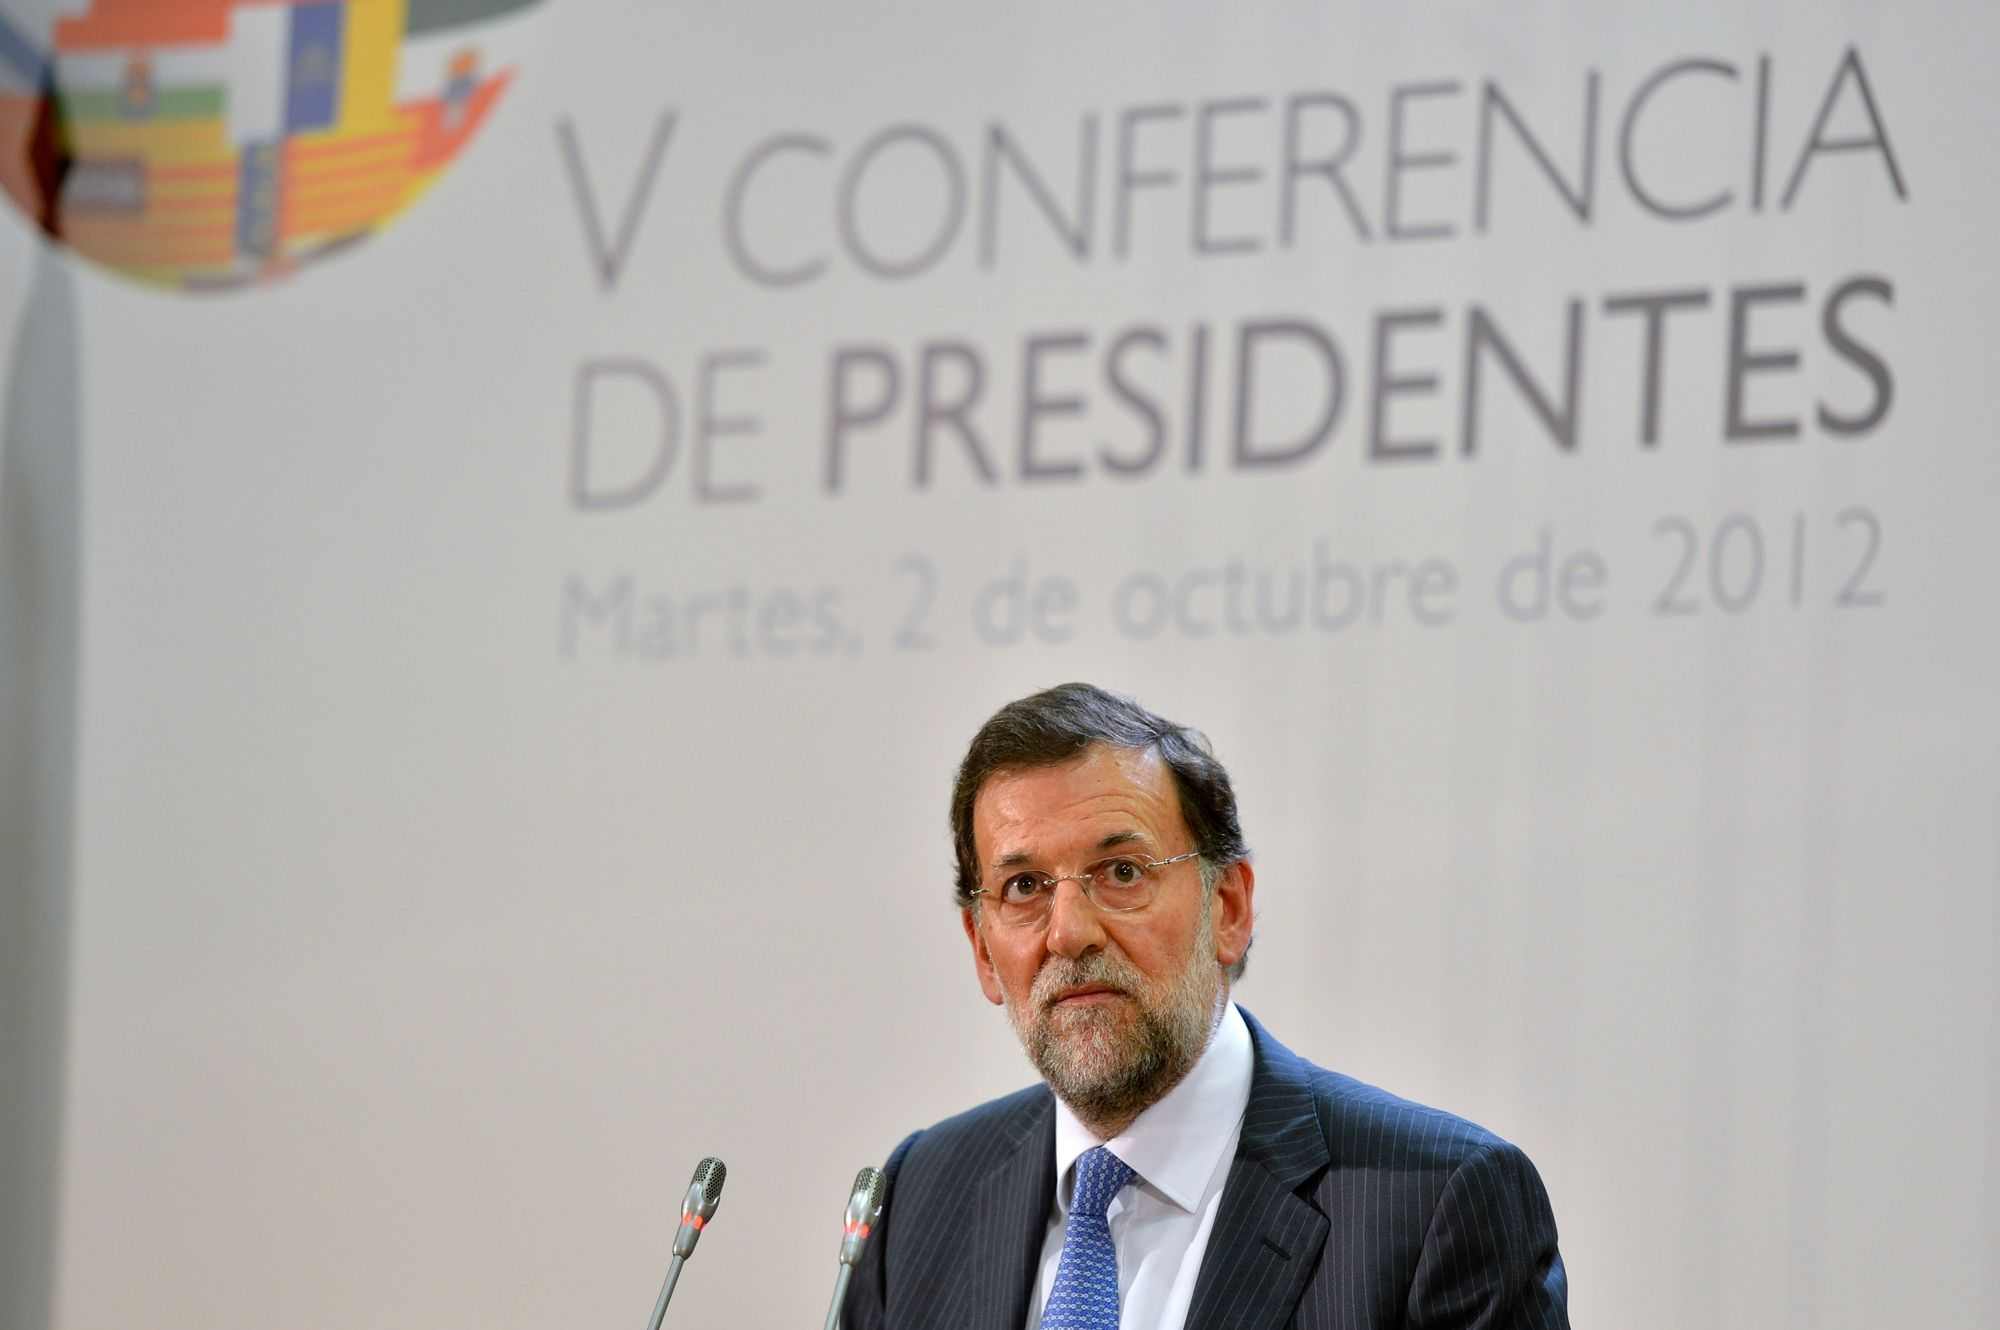 El fiasco de la Conferència de Presidents asfixia l'Operació Diàleg